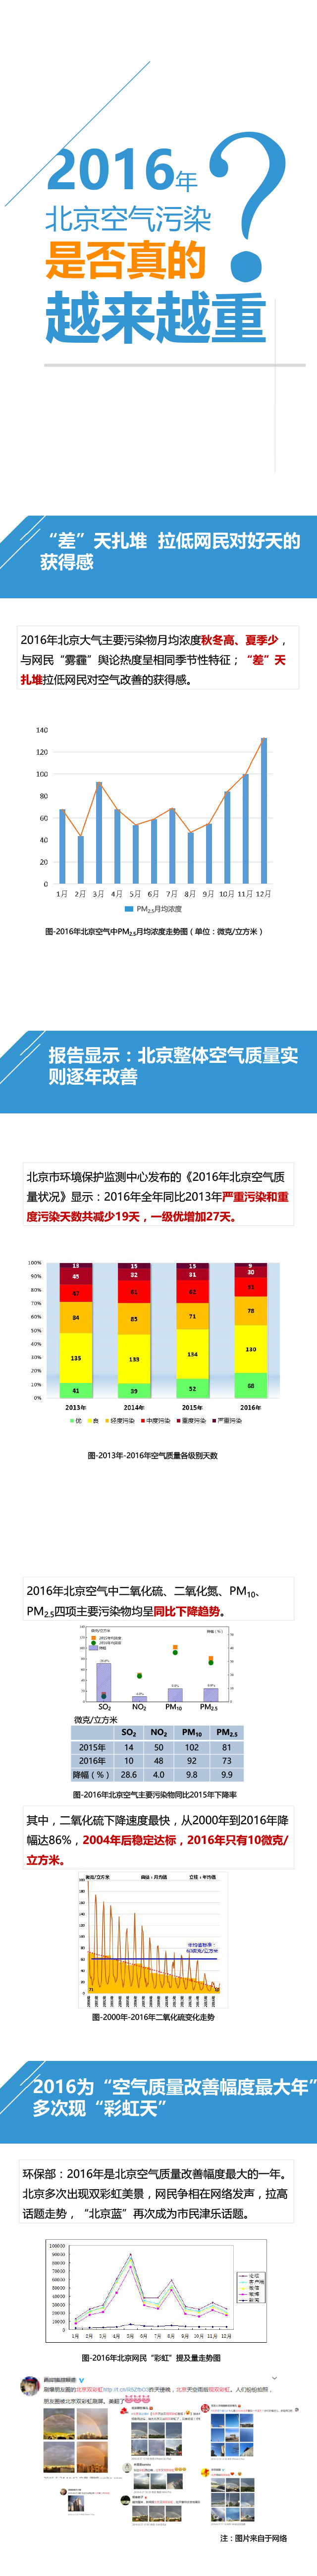 北京市环保联合会发布《数说大气2016》